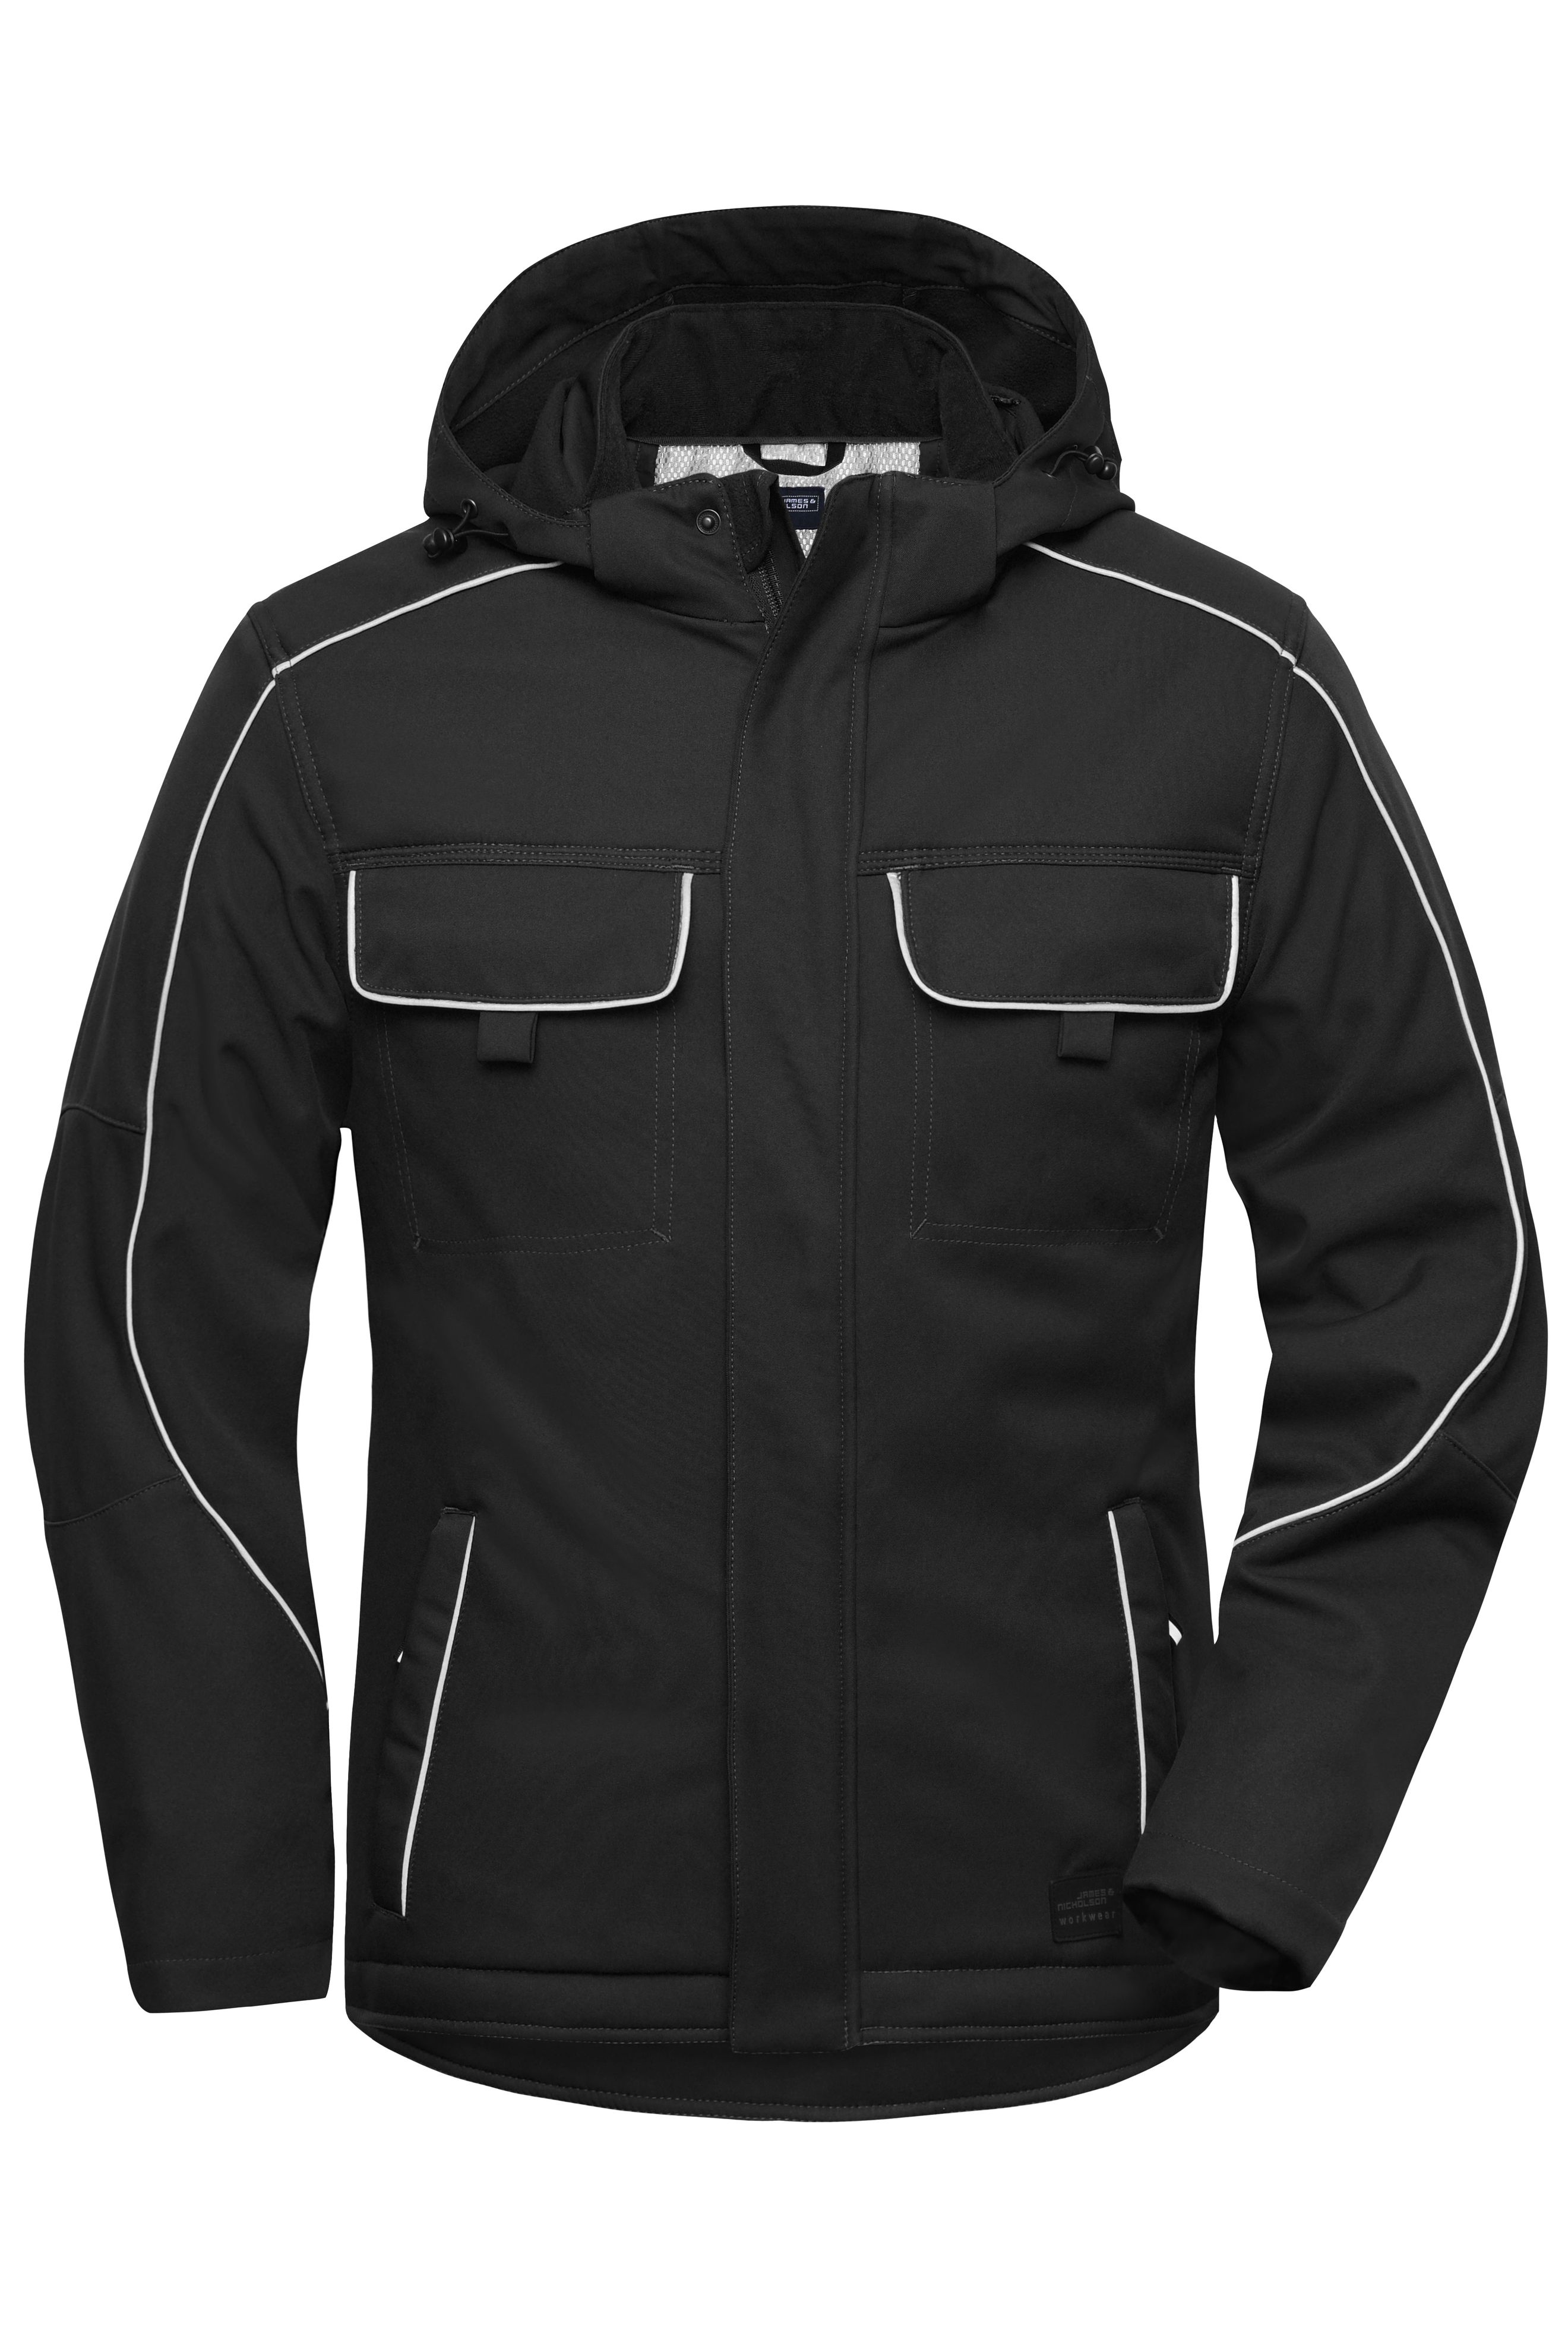 Workwear Softshell Padded Jacket - SOLID - JN886 Professionelle Softshelljacke mit warmem Innenfutter und hochwertigen Details im cleanen Look